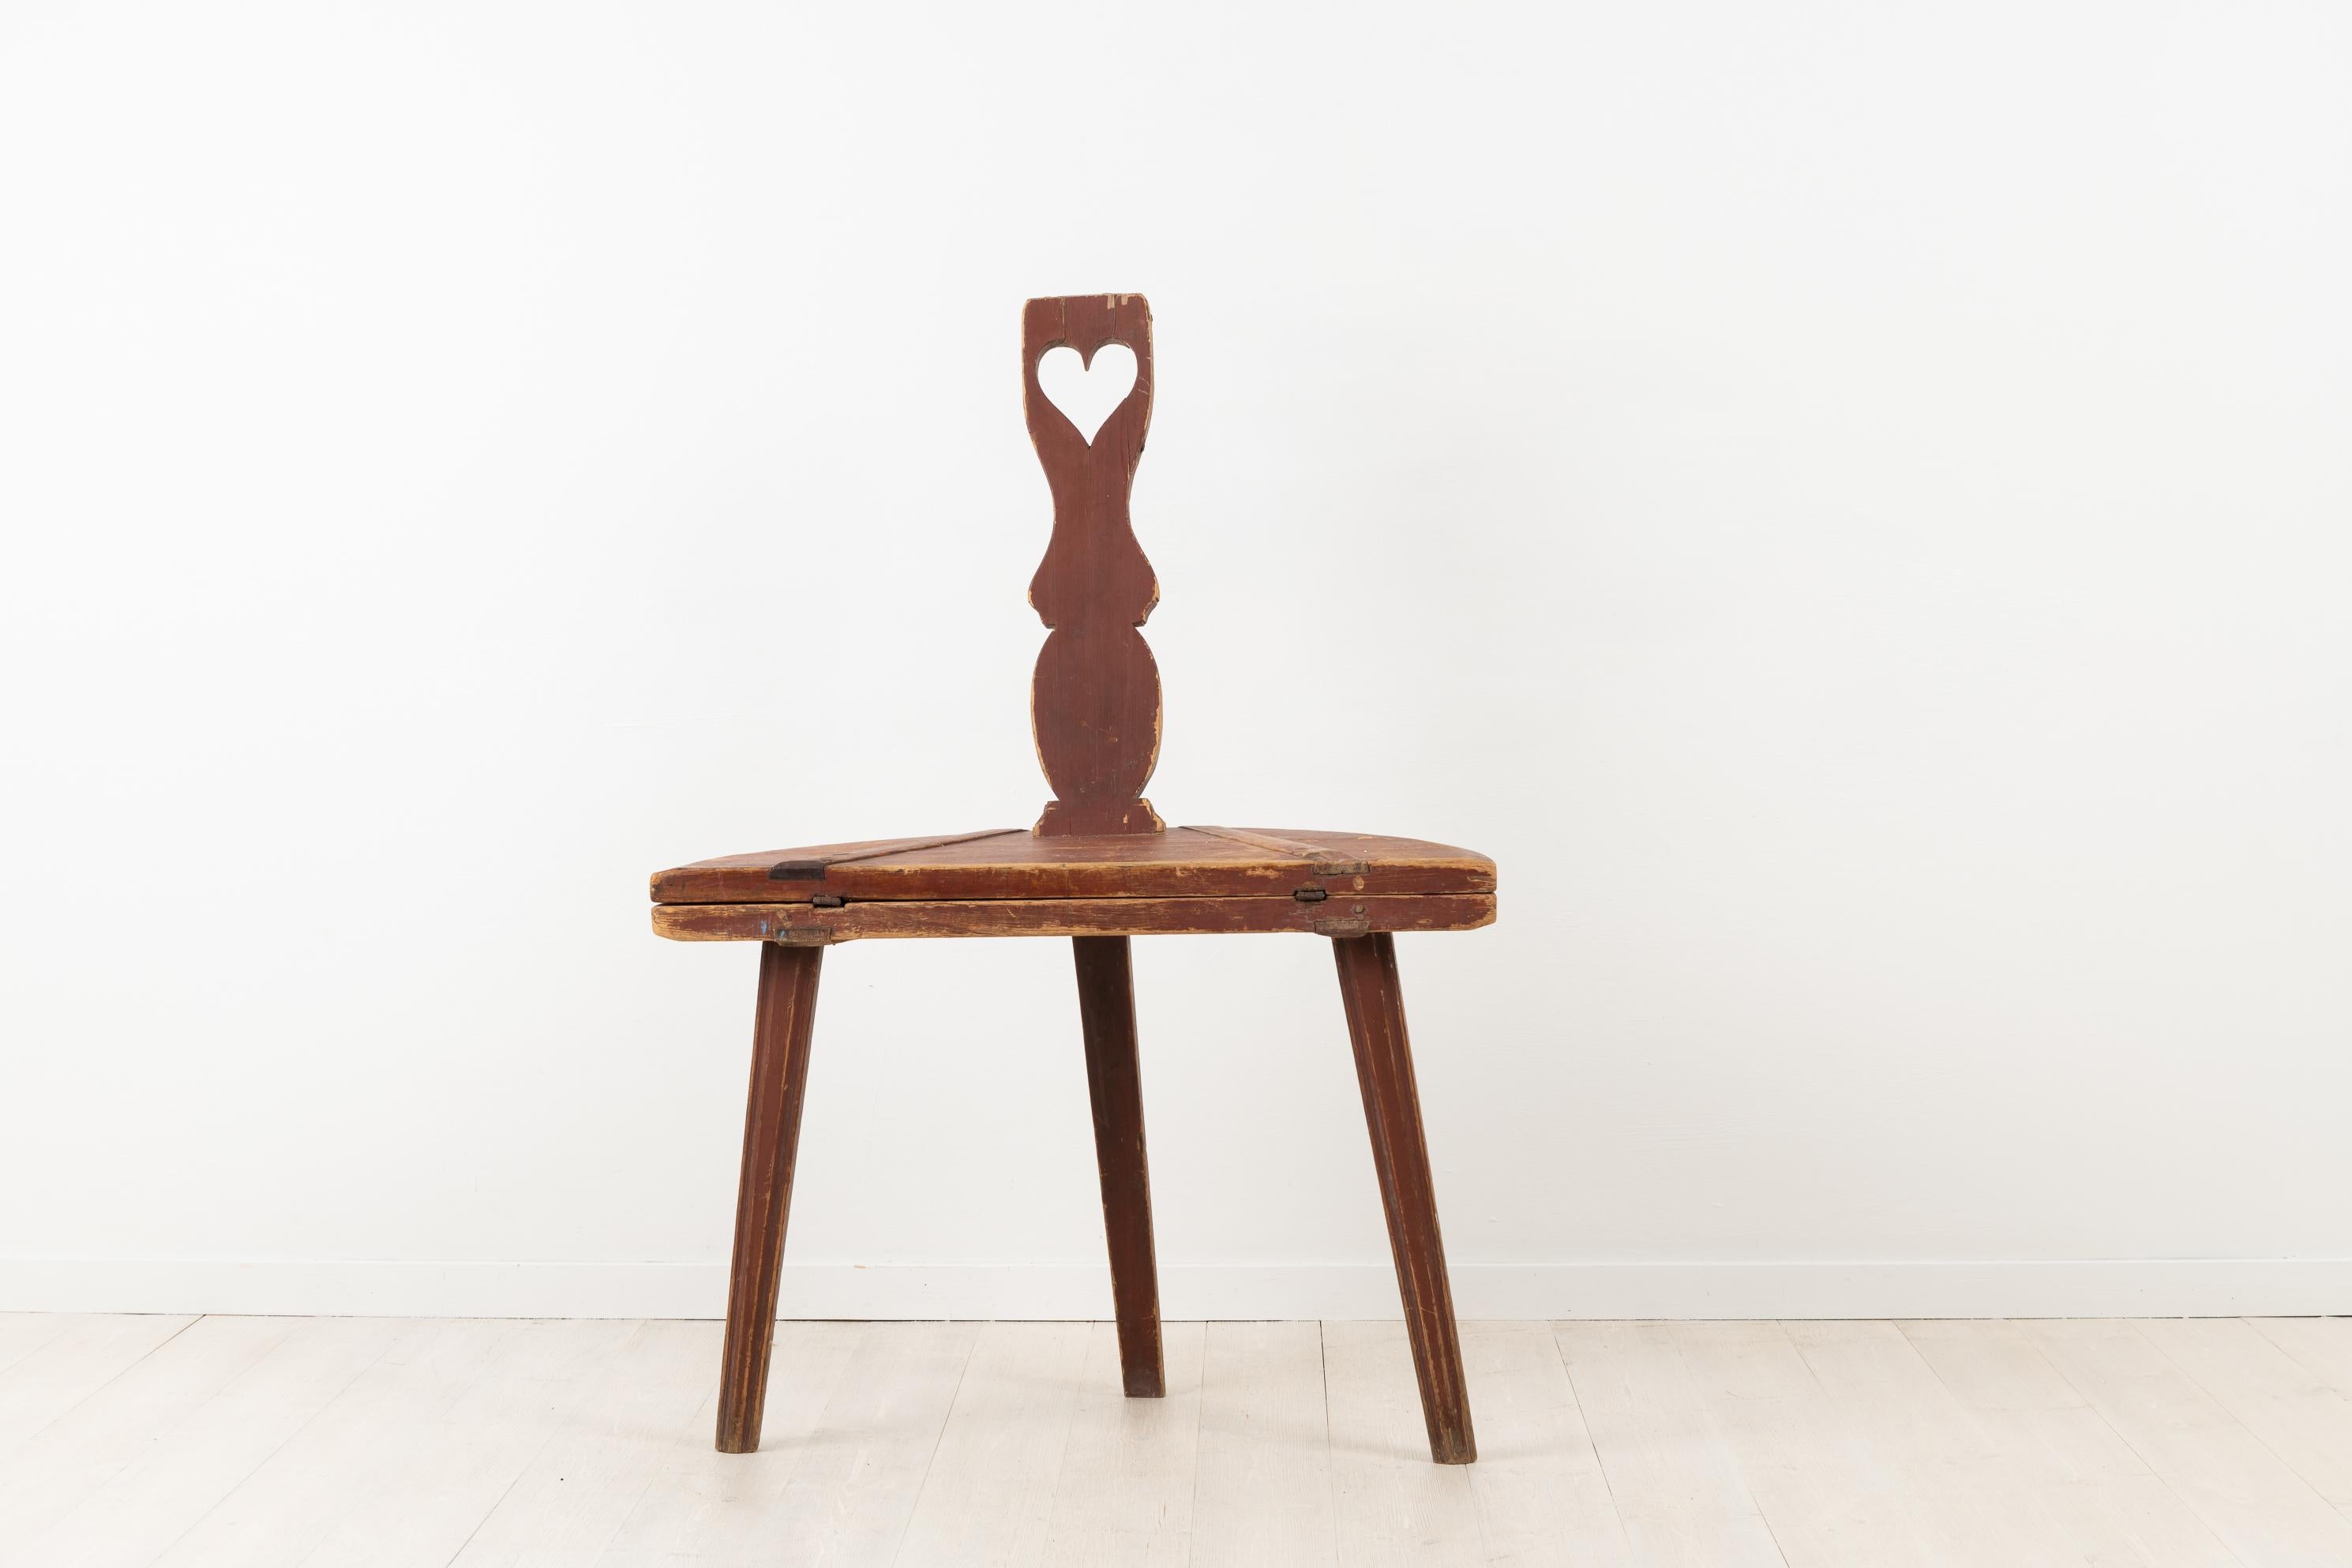 Folk Art Kombination Möbel Tisch und Stuhl. Kombinationsmöbel sind ideal für kleine Räume, und dieses Modell eignet sich gut als Couchtisch oder Beistelltisch. Hergestellt Anfang des 19. Jahrhunderts, ca. 1820-1840. Verziert mit einem Herz.